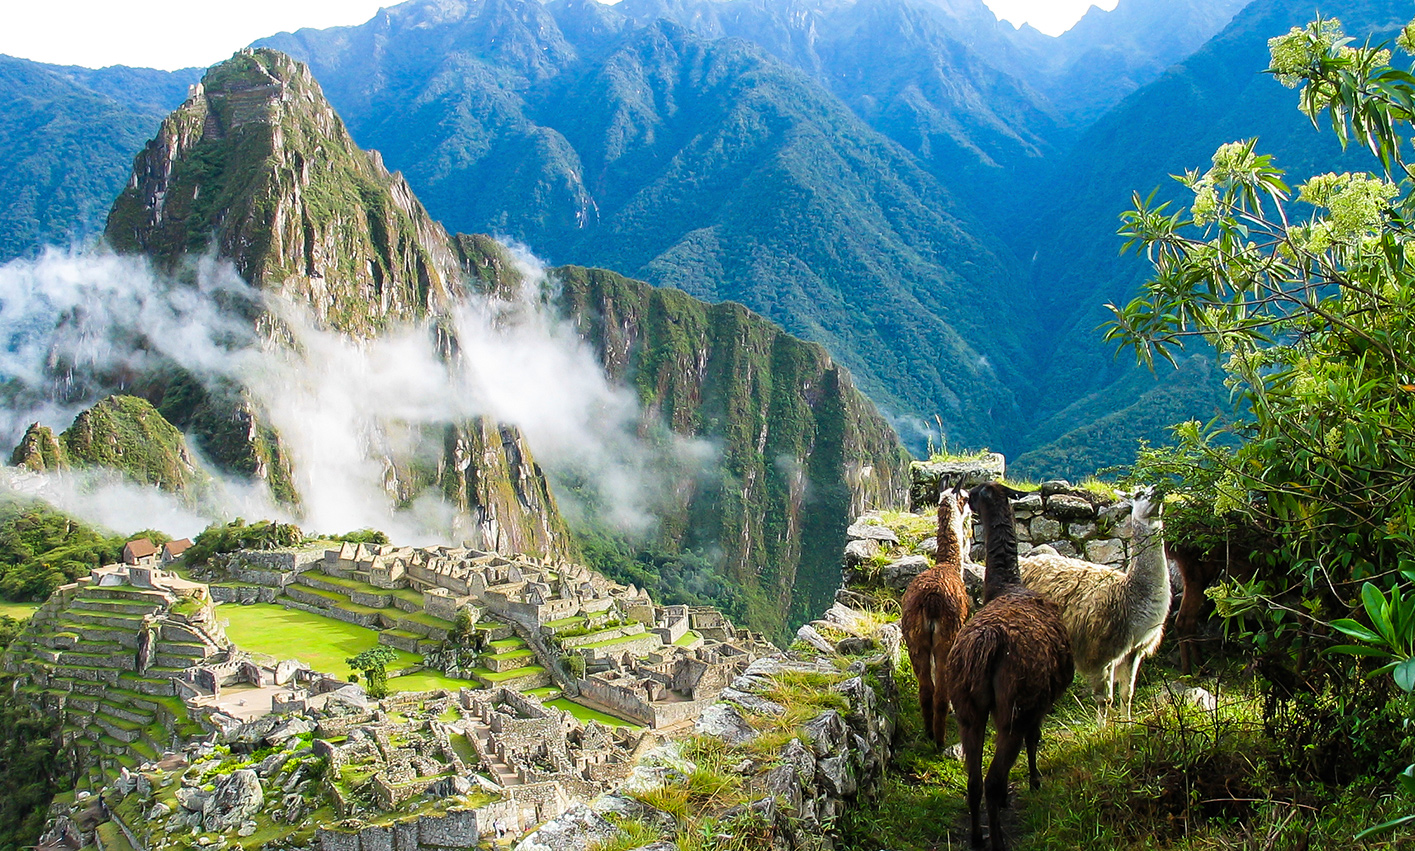 Llamas enjoying the view of Machu Picchu and surrounding mountains in Peru.